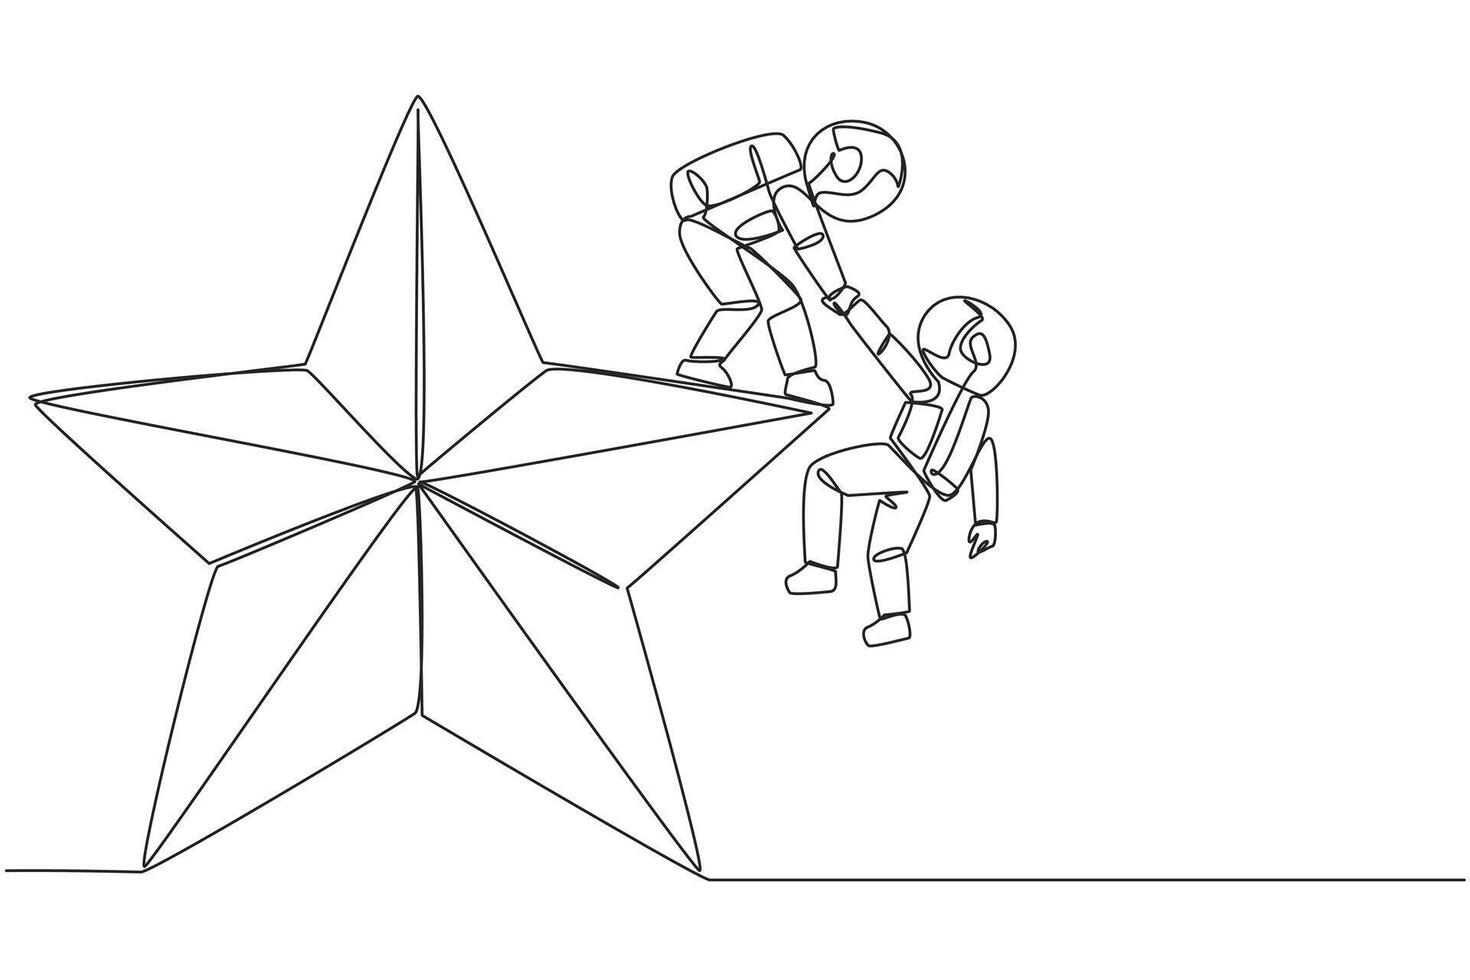 kontinuierlich einer Linie Zeichnung Astronaut hilft Kollege steigen groß Stern. Metapher von erreichen Träume von Erfolg zusammen. haben ein sehr gut Werdegang Position. Single Linie zeichnen Design Illustration vektor